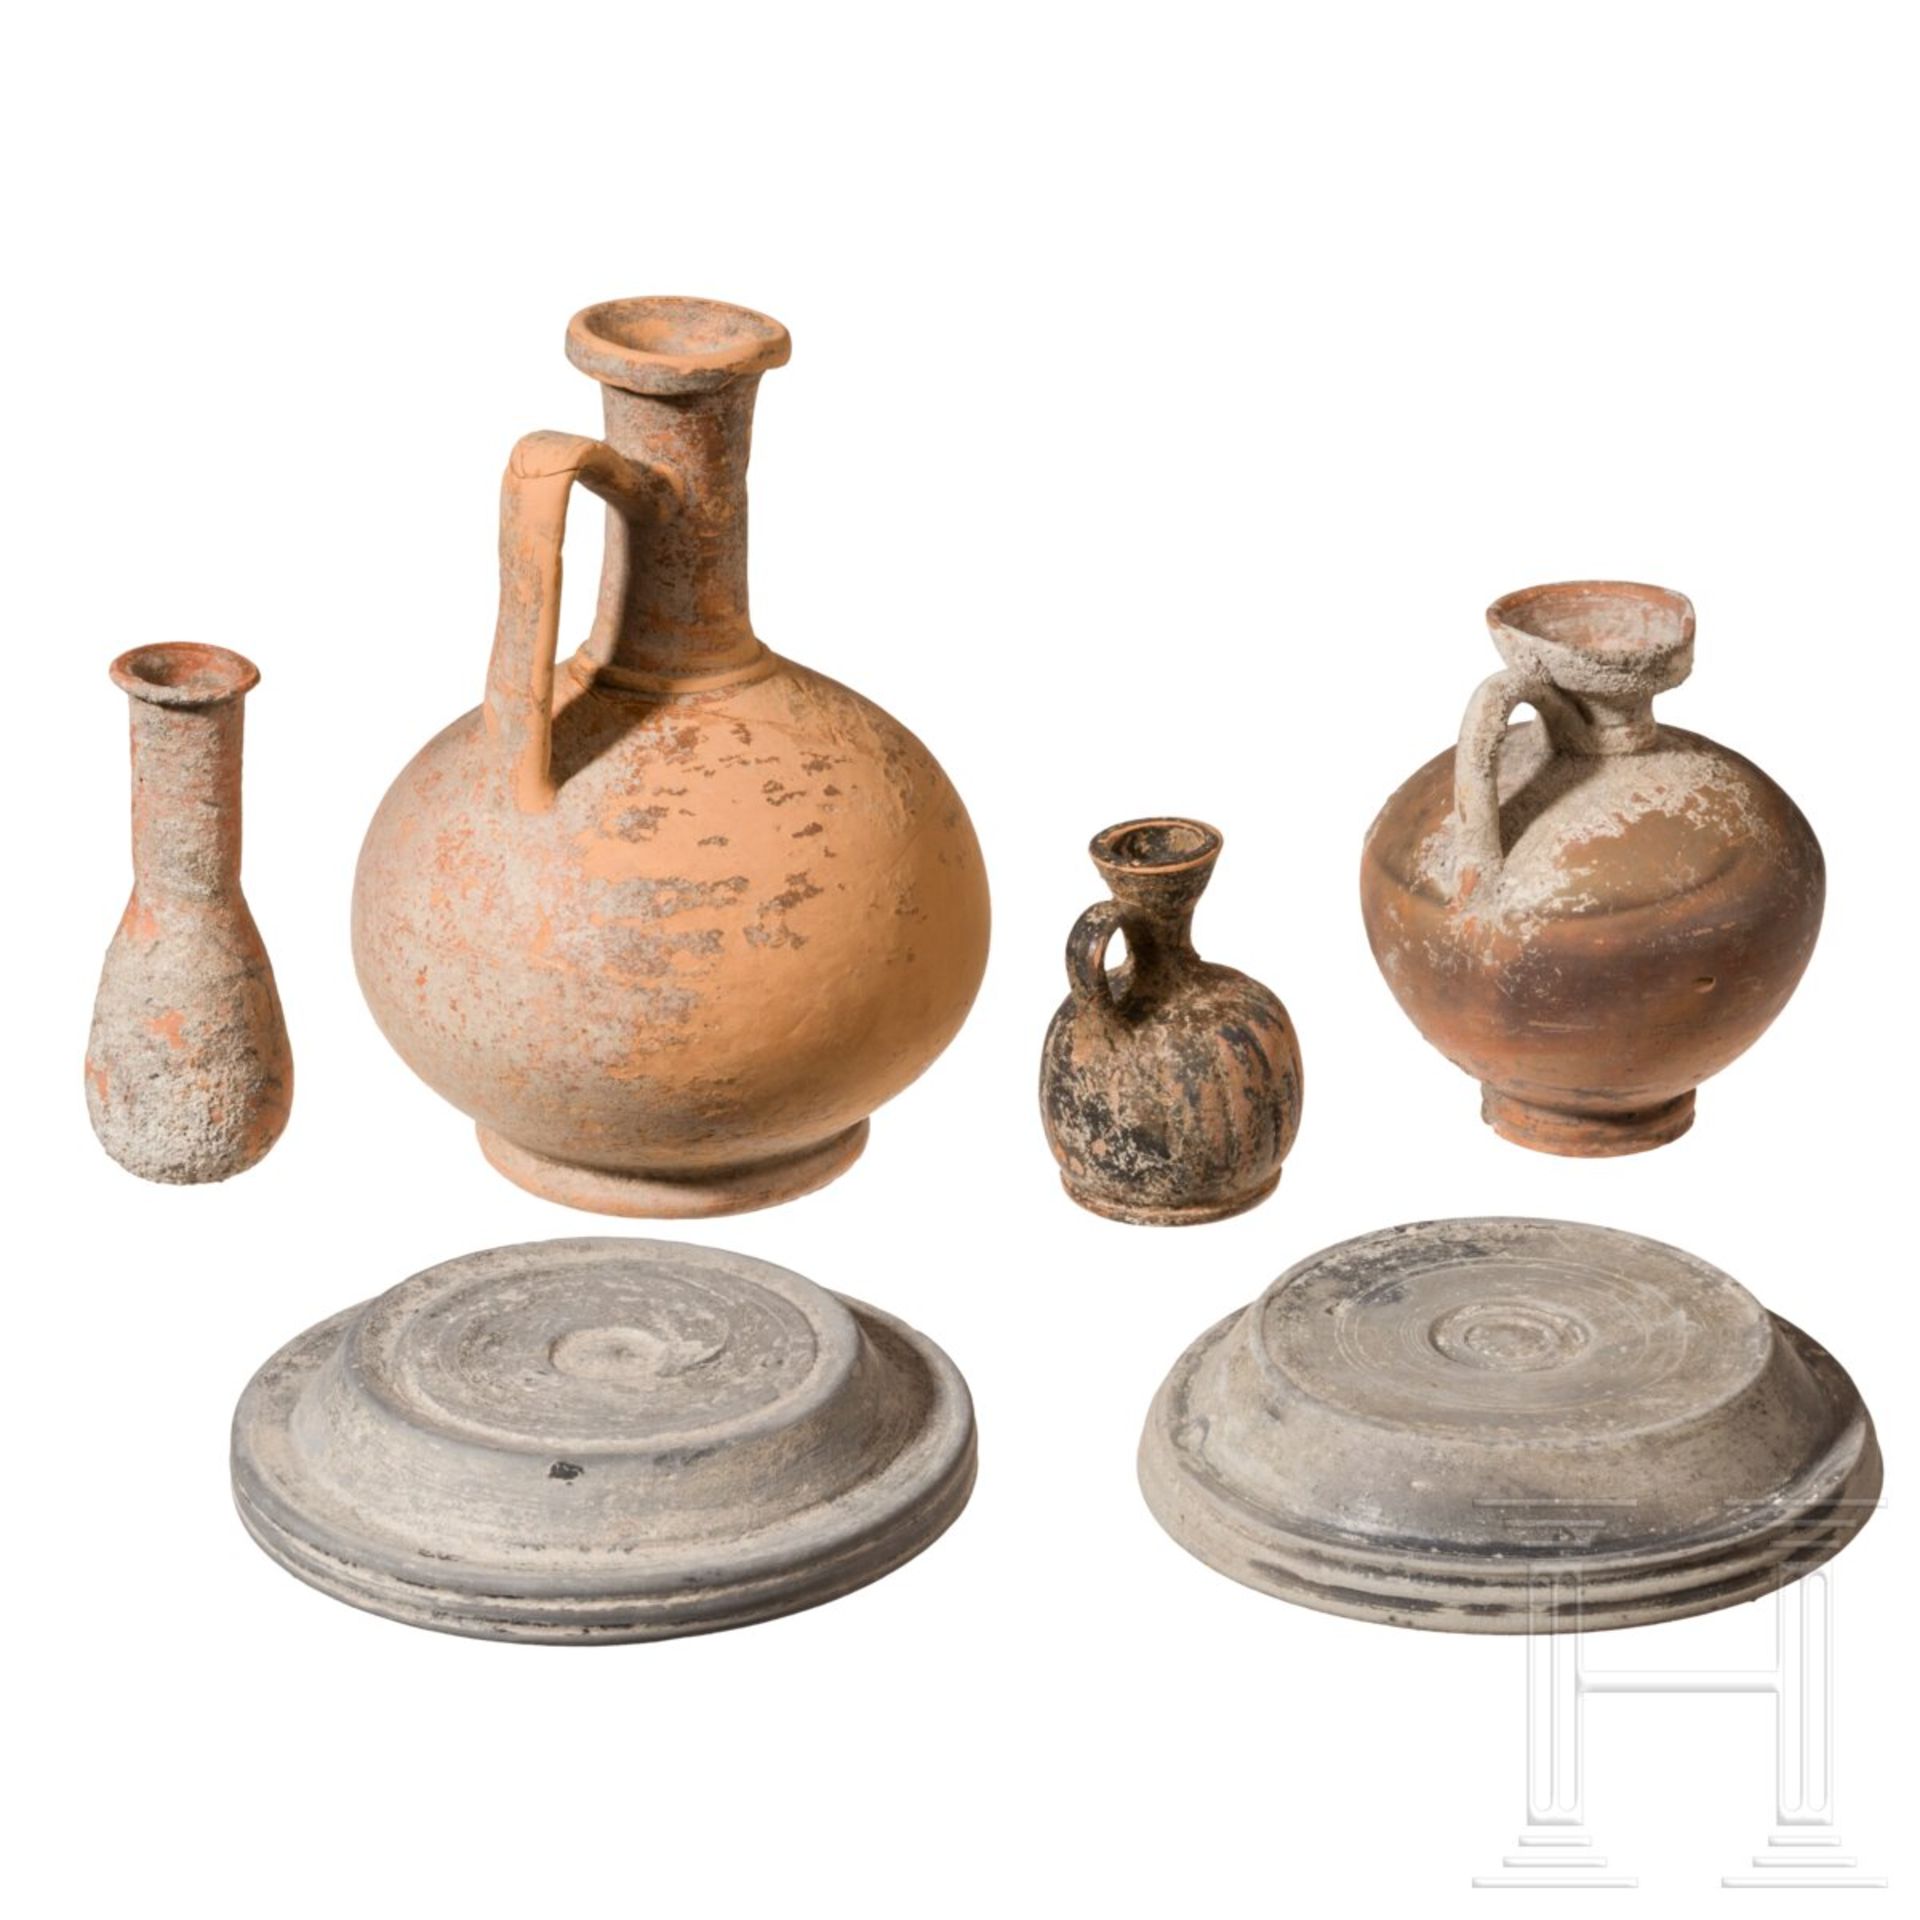 Sechs antike Keramiken, meist römisch, 3. Jhdt. v. - 3. Jhdt. n. Chr. - Bild 2 aus 2